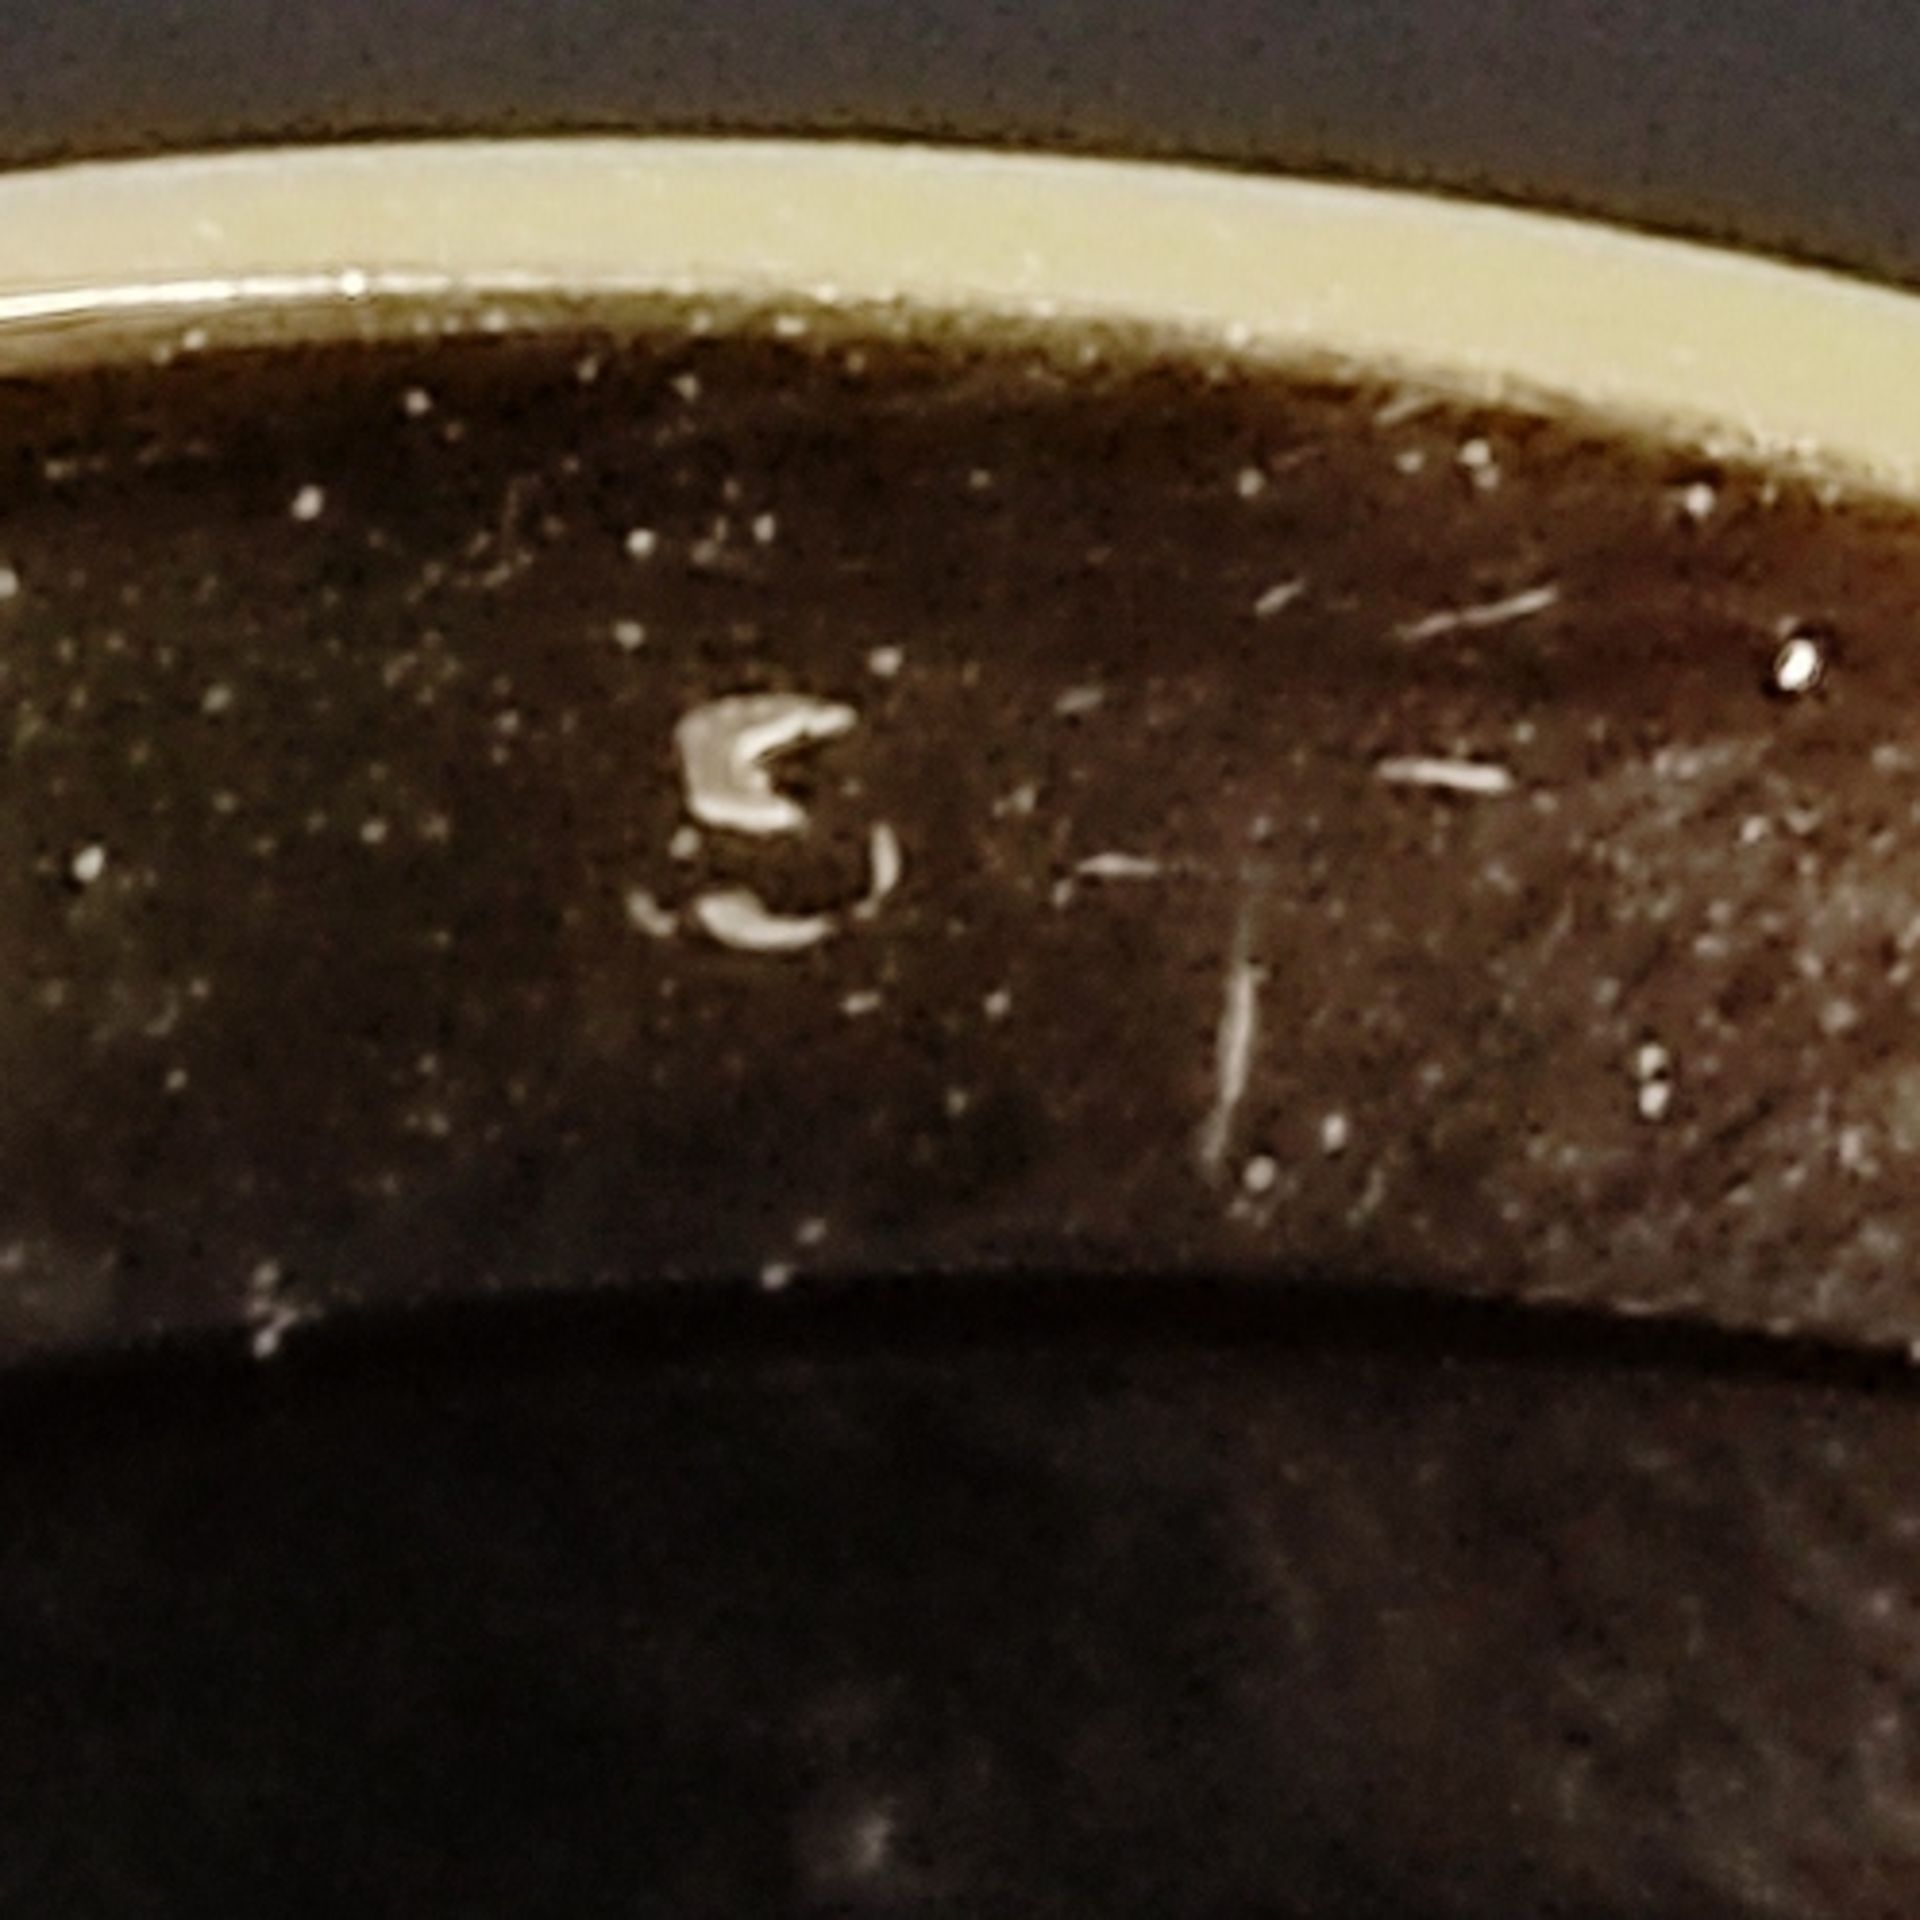 Saphirring, 585/14K Gelbgold (getestet), Gesamtgewicht 3,44g, besetzt mit drei oval facettierten Sa - Bild 3 aus 3